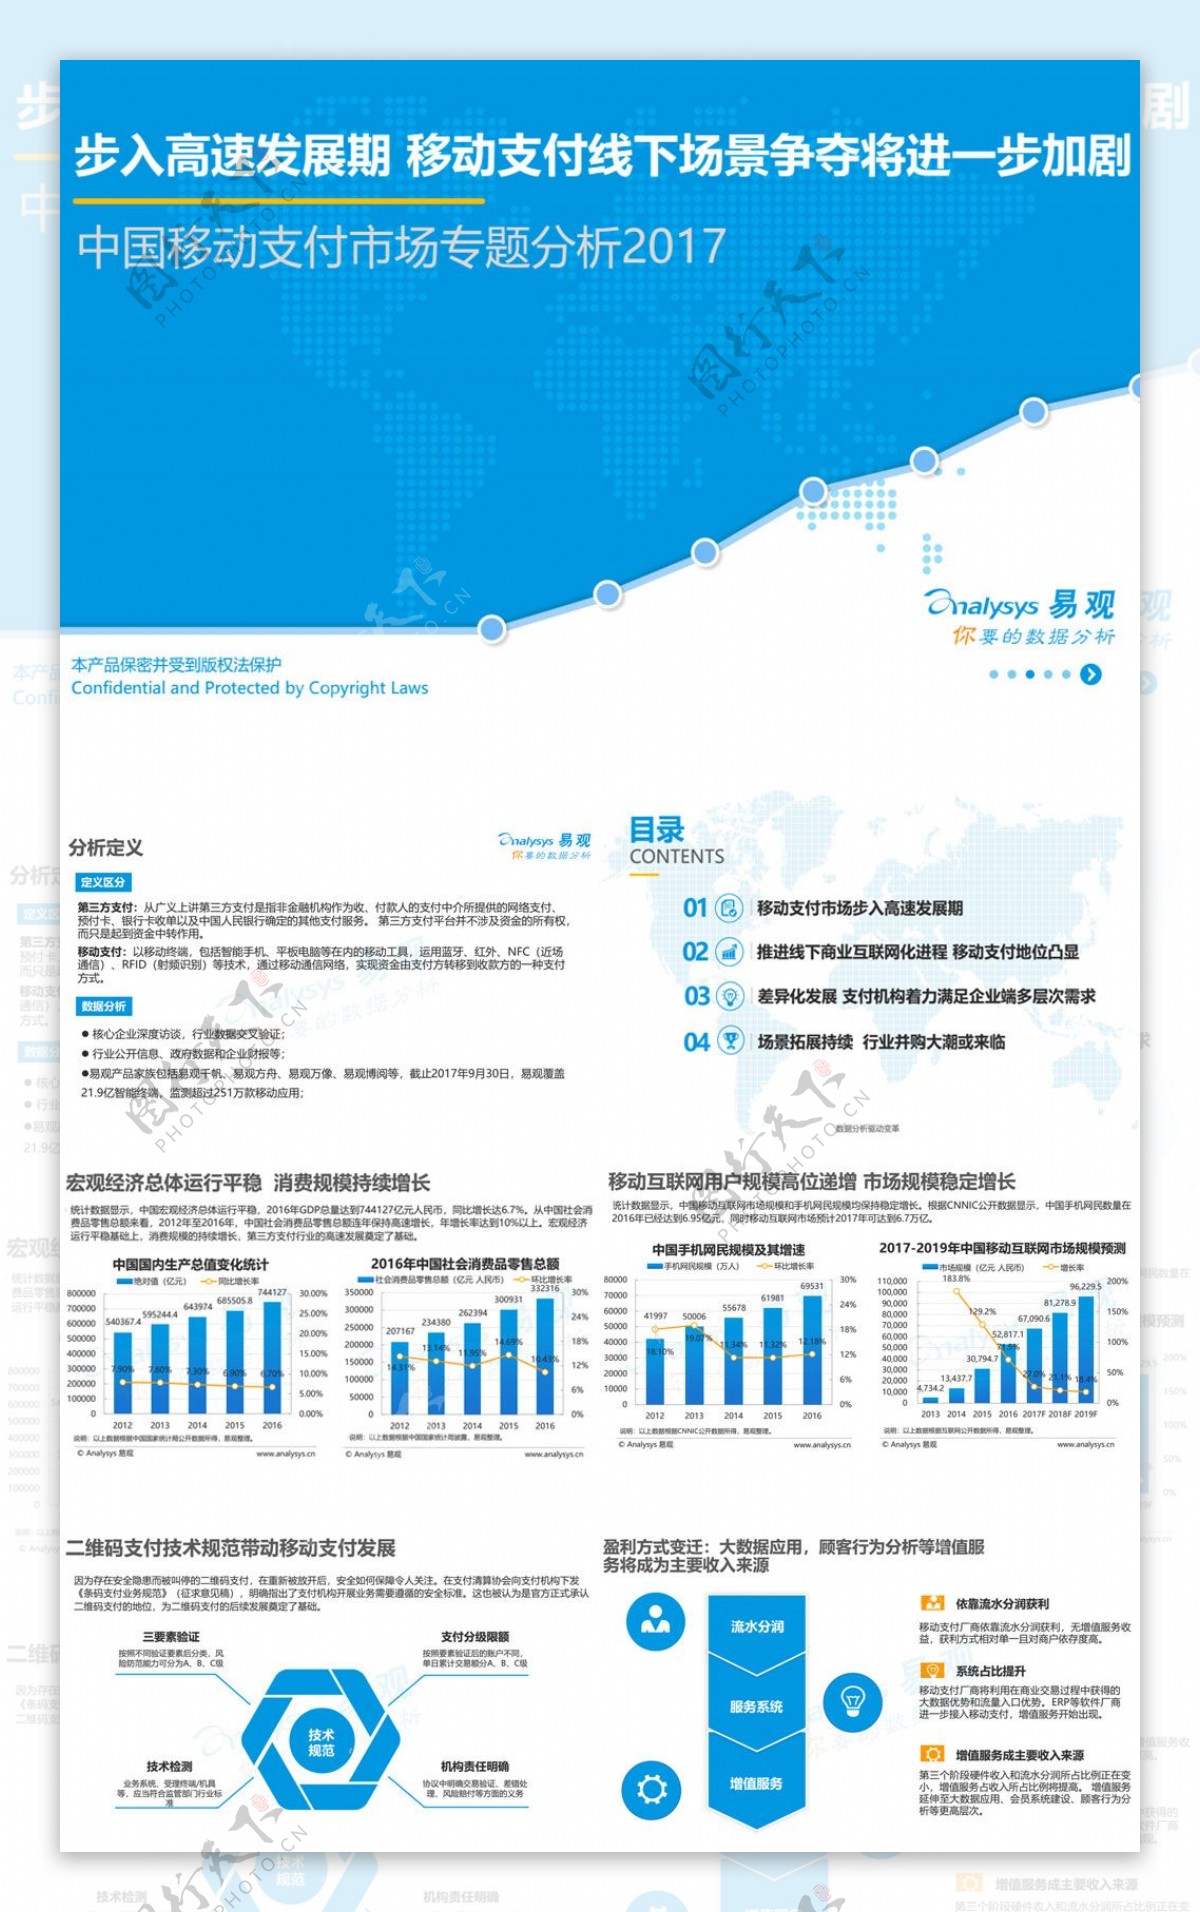 2017中国移动支付市场专题分析报告